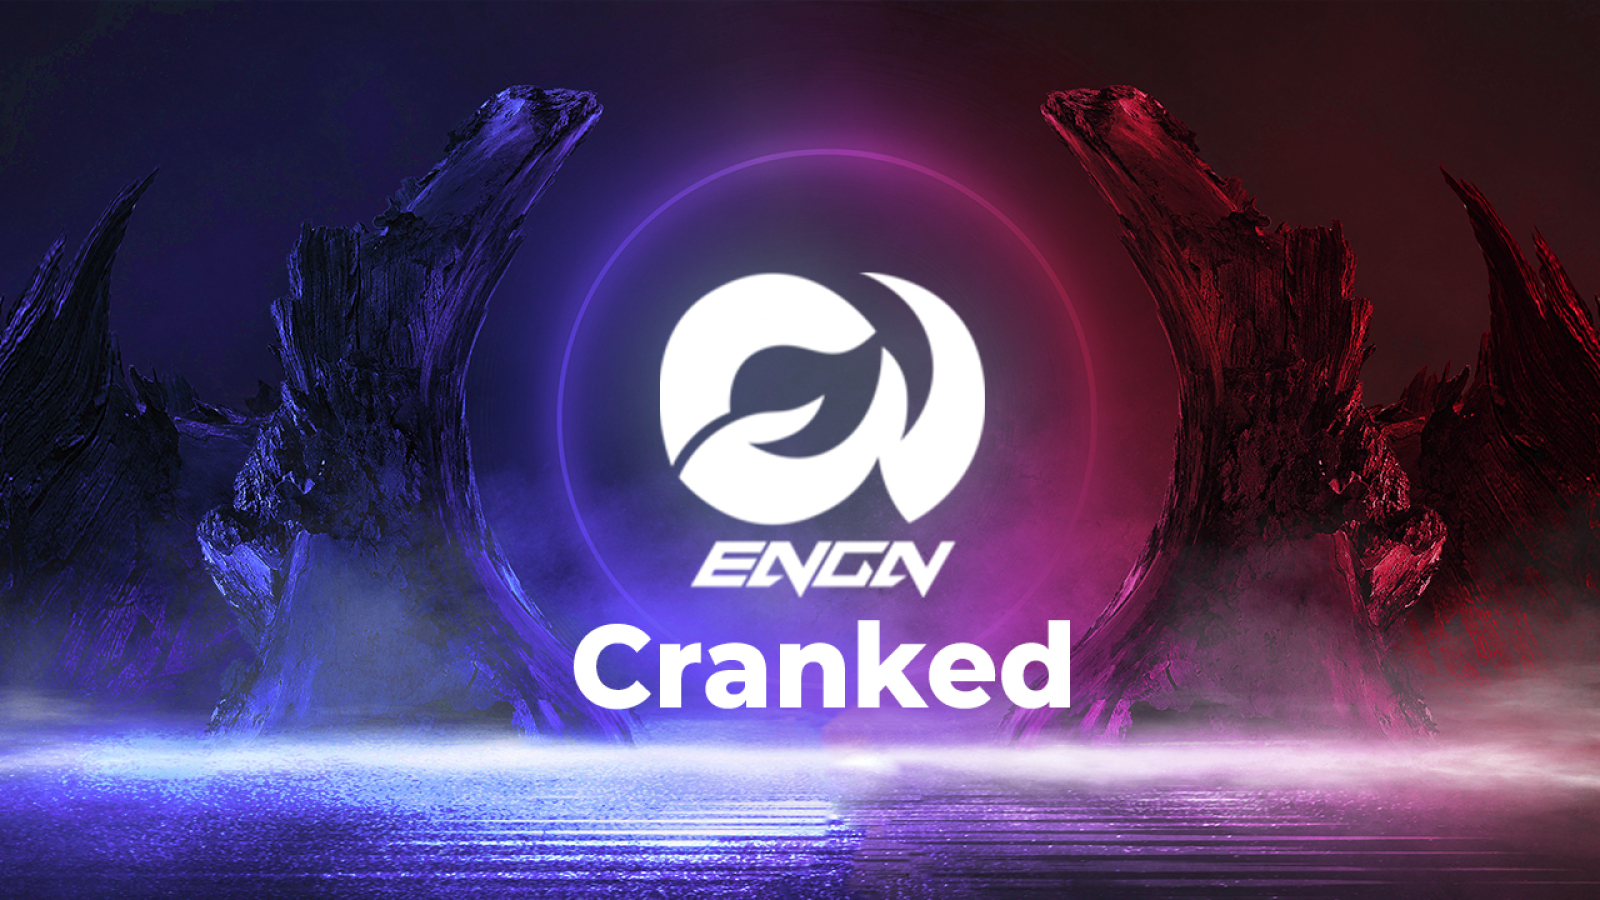 Engine (ENGN) GameFi Shares Details of Cranked Release